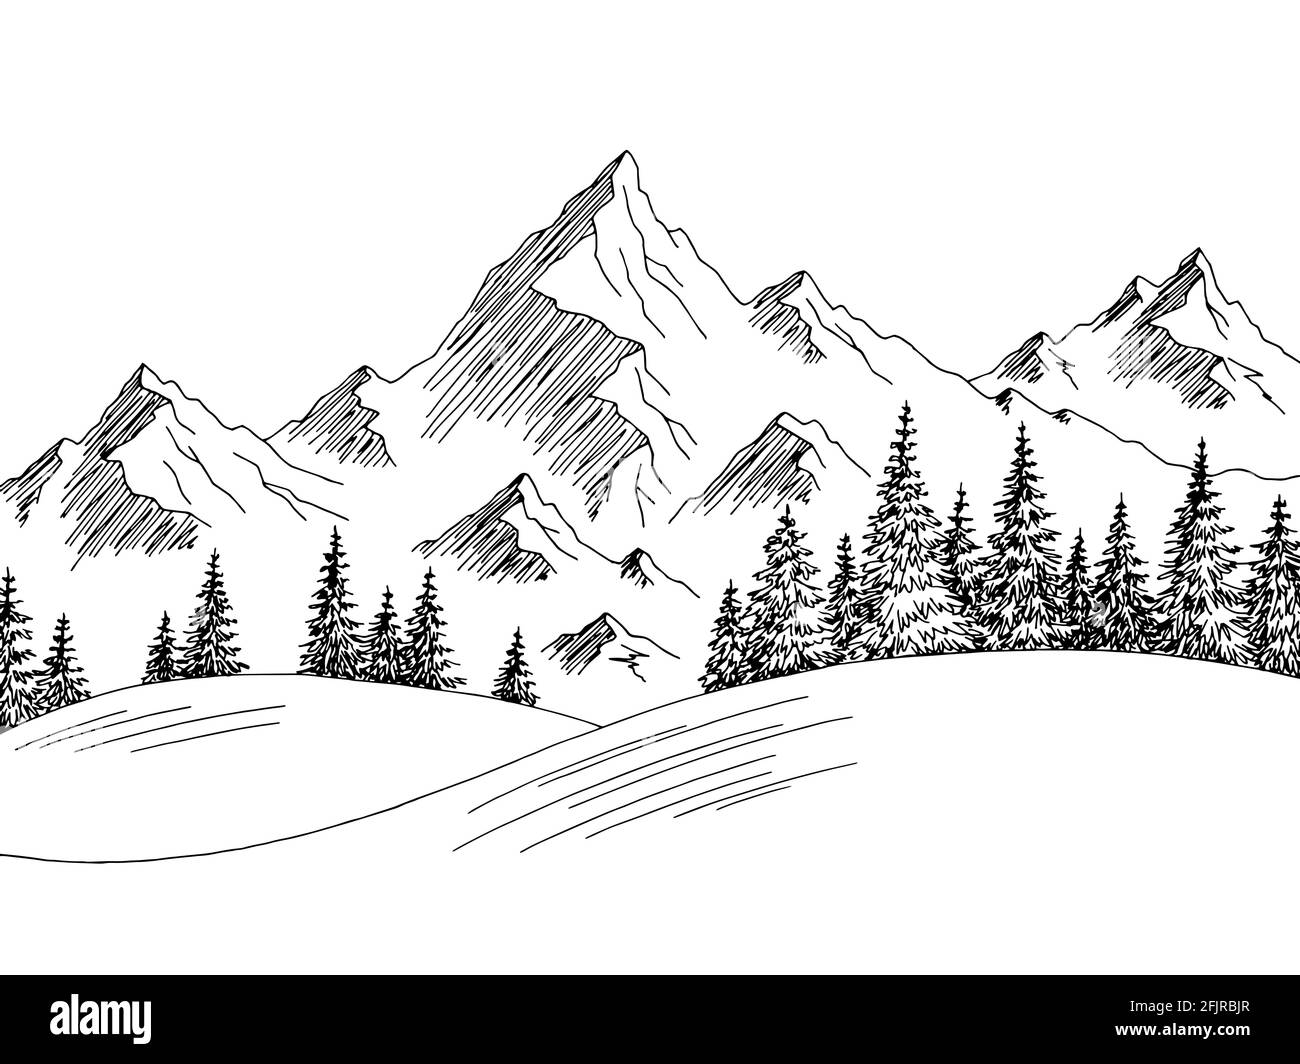 Berg Hügel Grafik schwarz weiß Landschaft Skizze Illustration Vektor  Stock-Vektorgrafik - Alamy